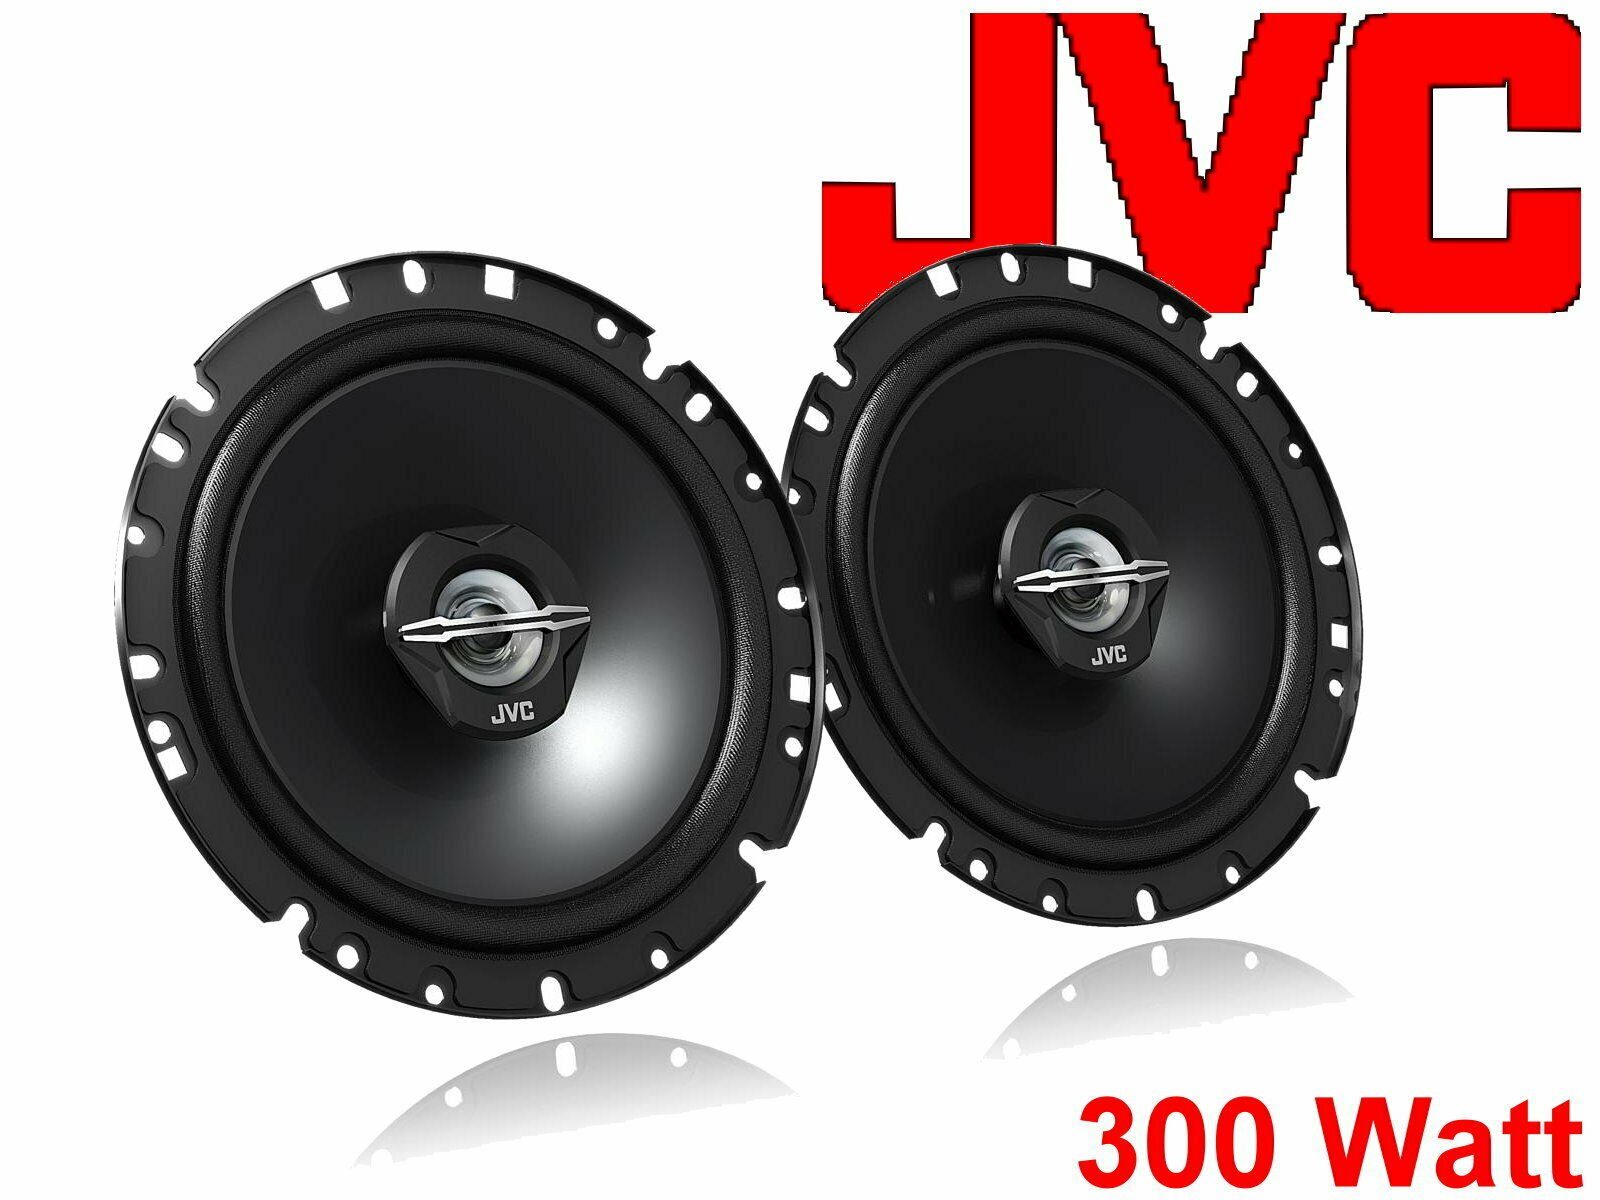 DSX Seat Auto-Lautsprecher Set (30 Altea W) JVC XL passend für Lautsprecher B